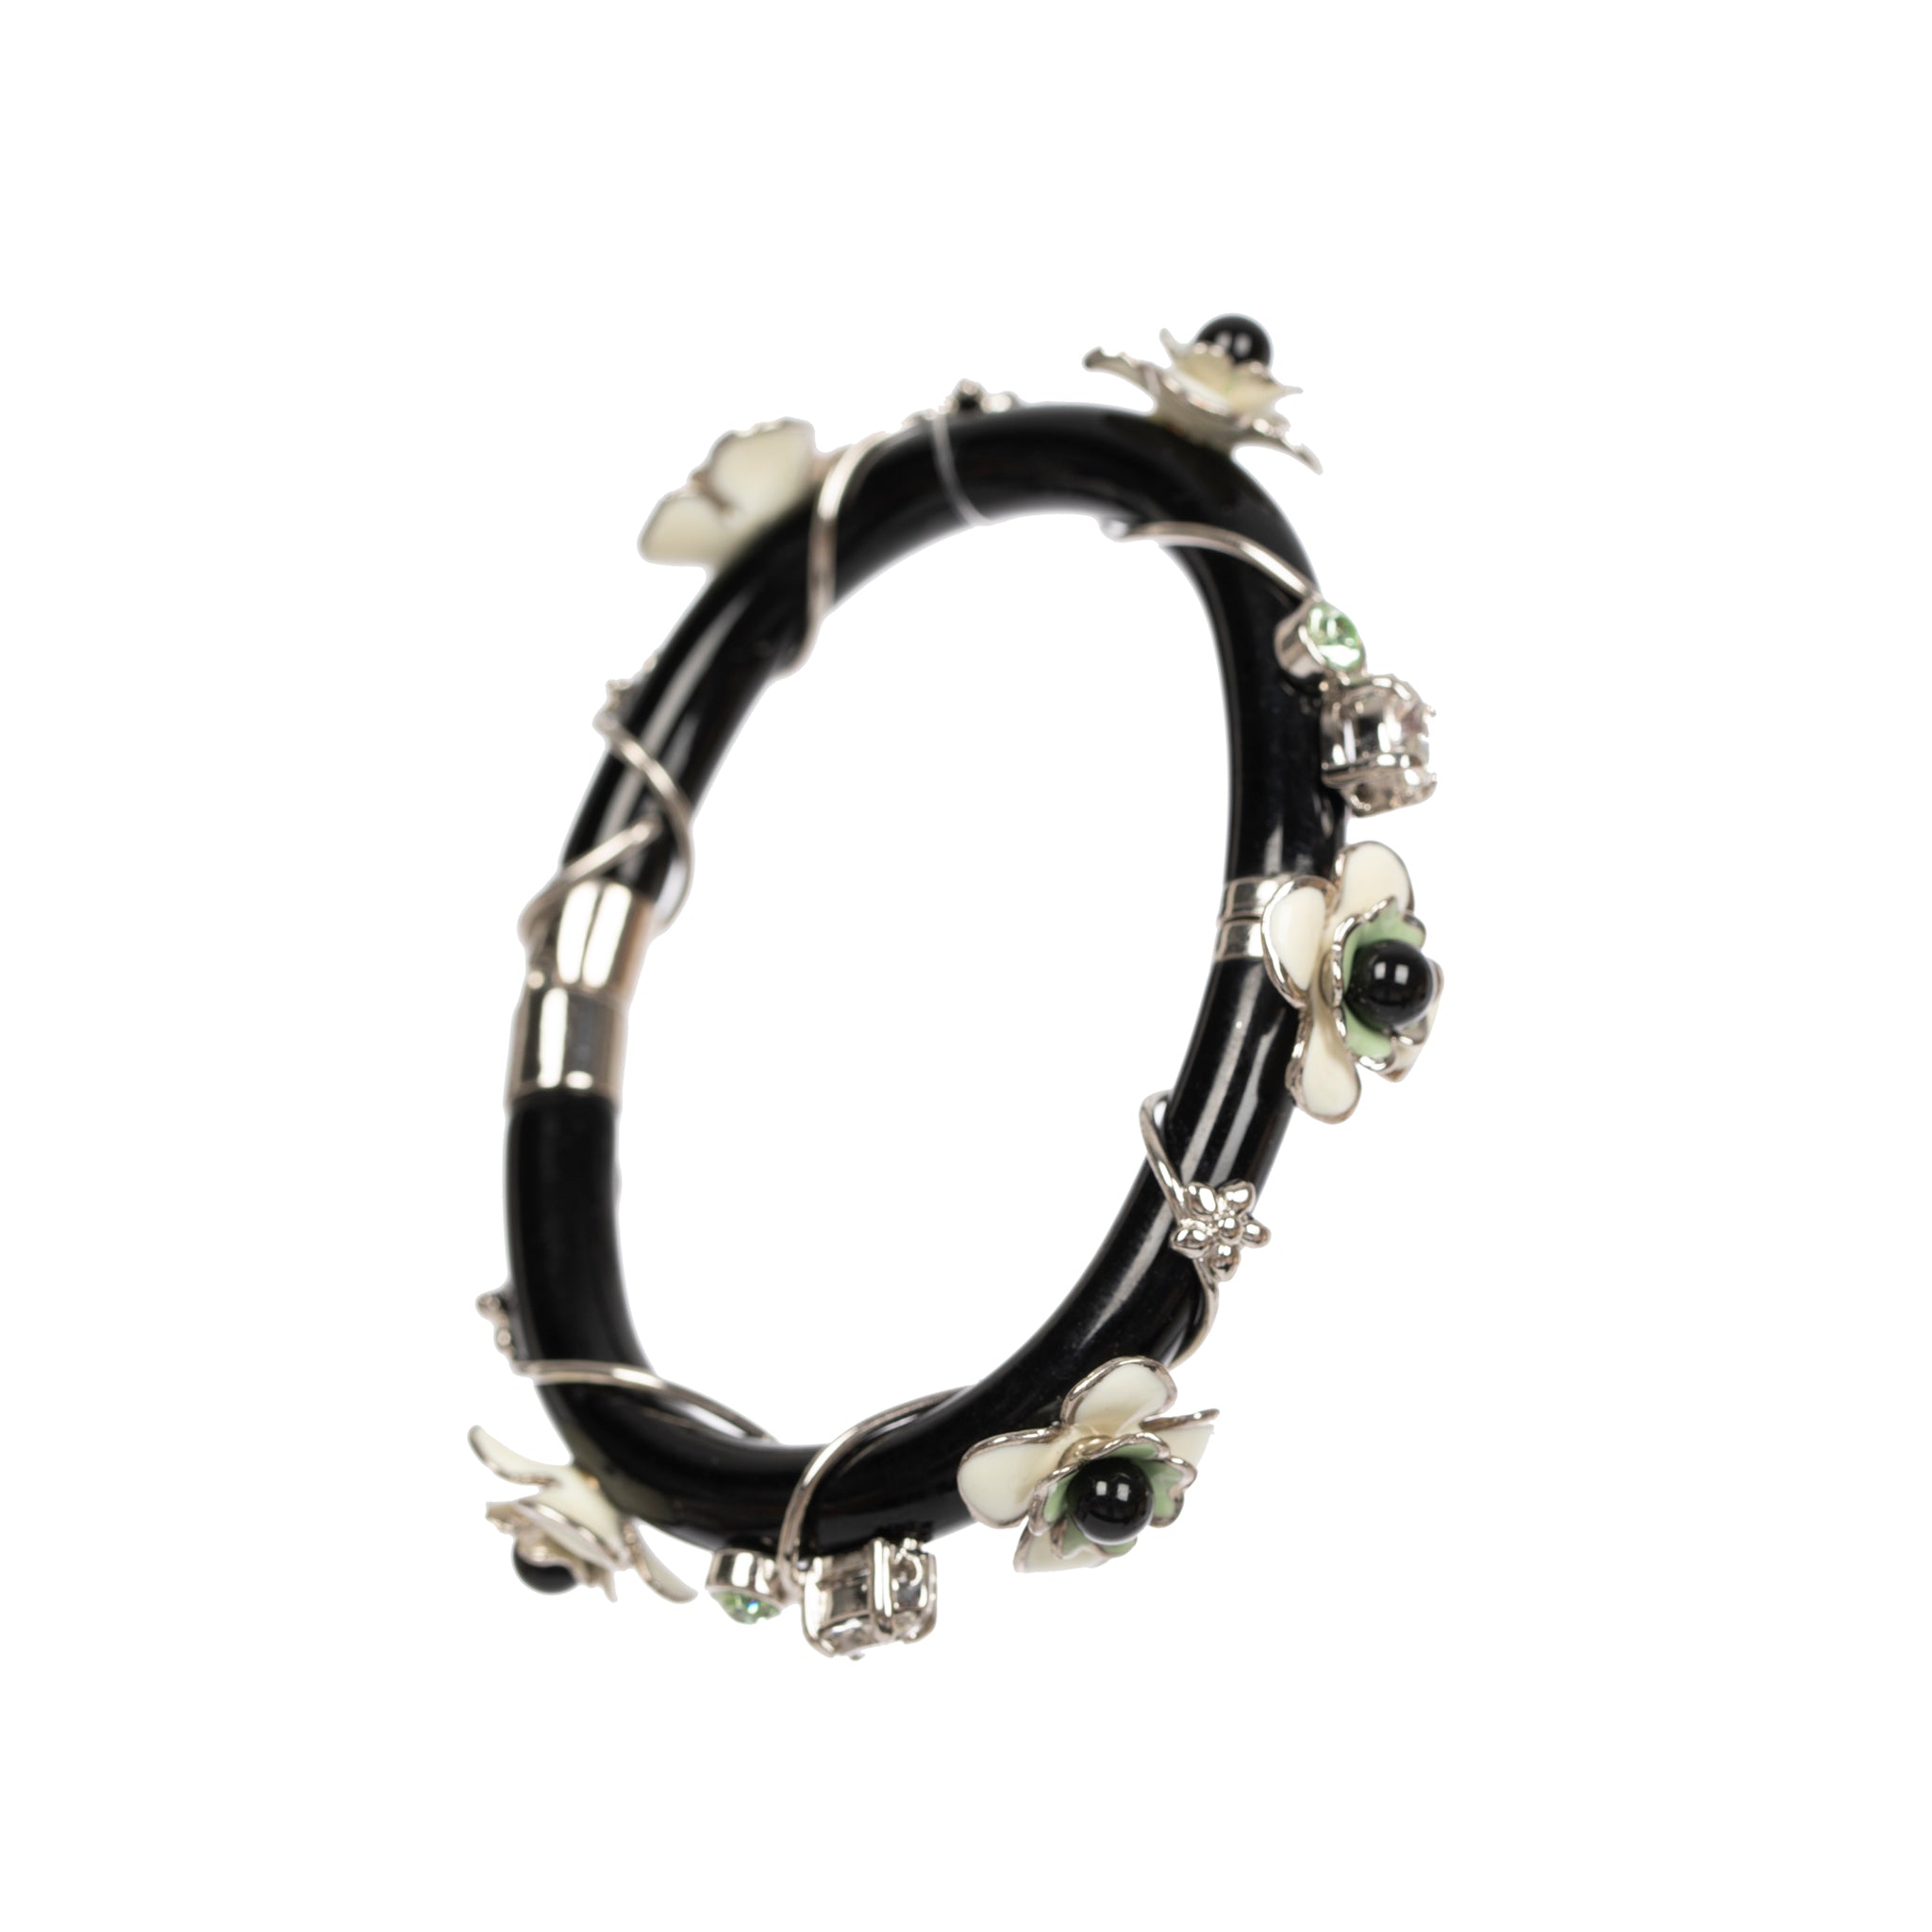 Prada Black & Ivory Flower Design Bracelet